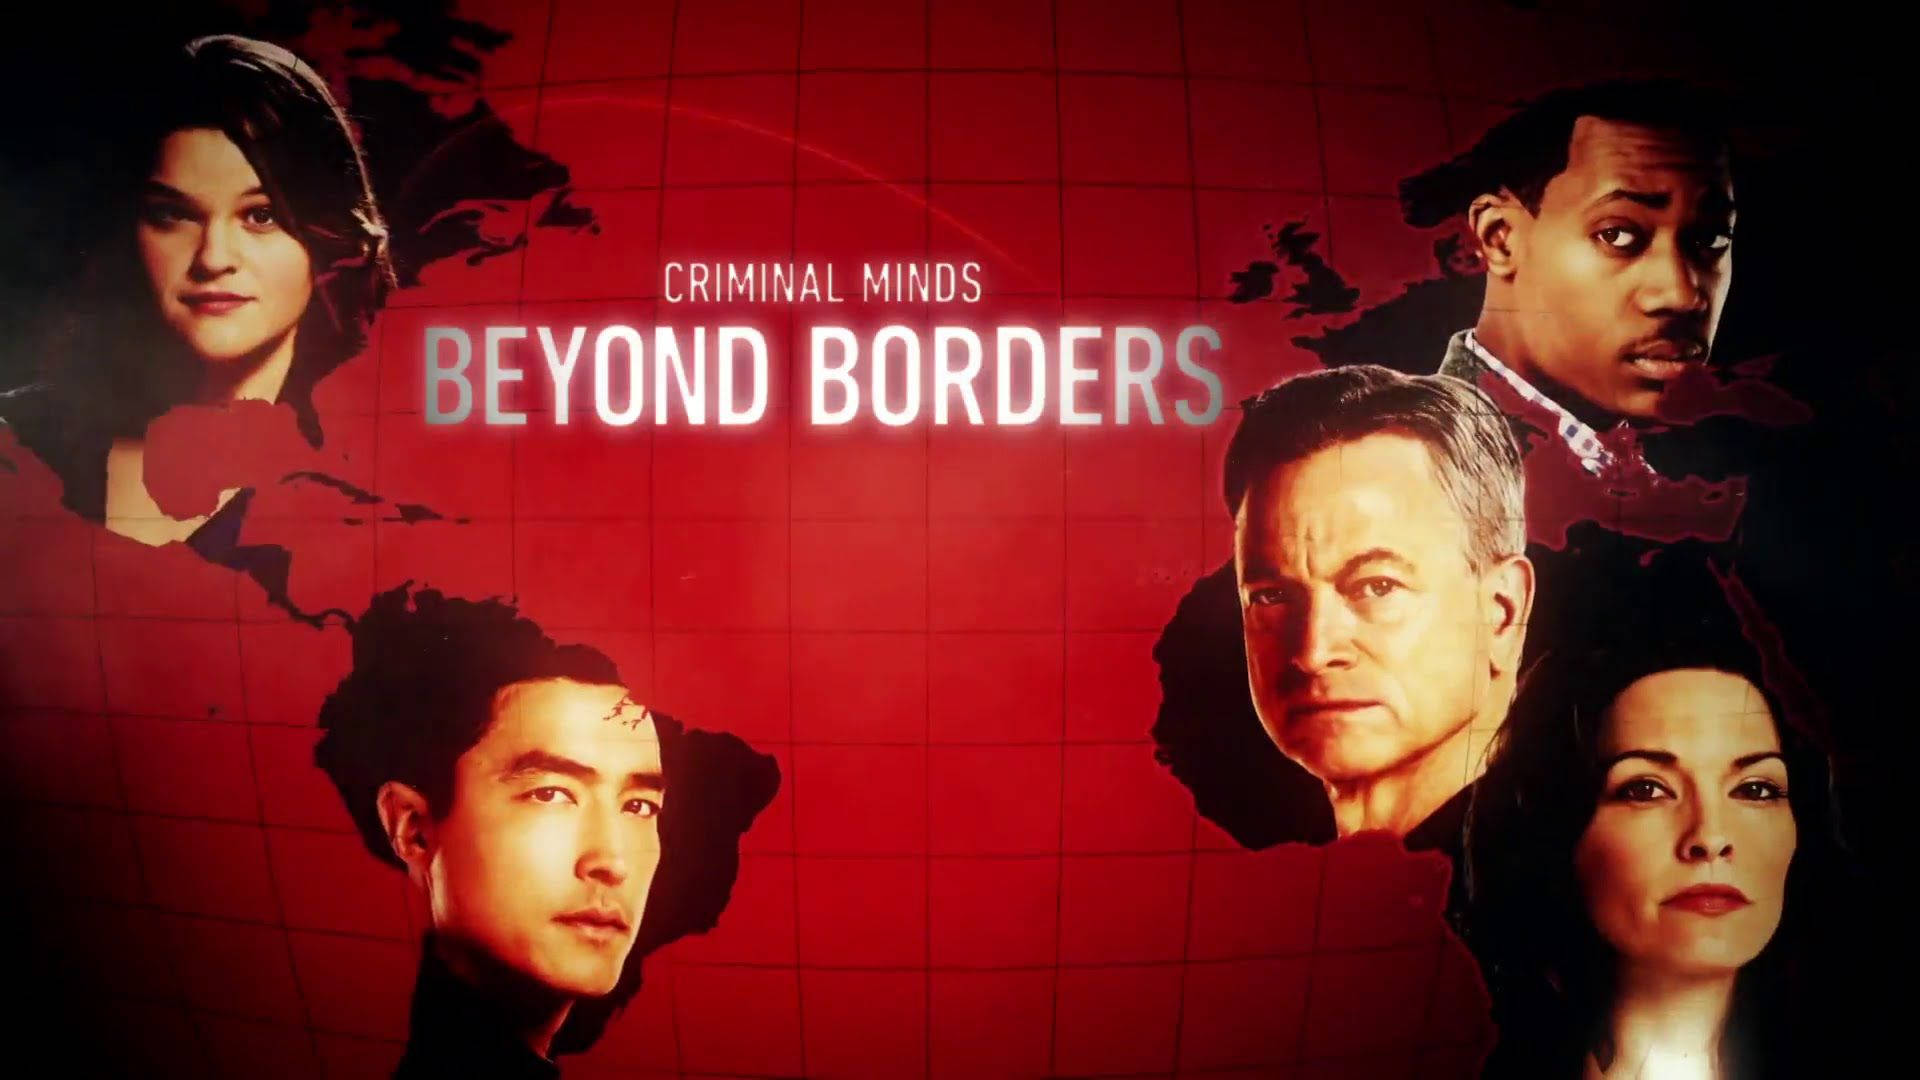 Criminal Minds Spin-off Beyond Borders